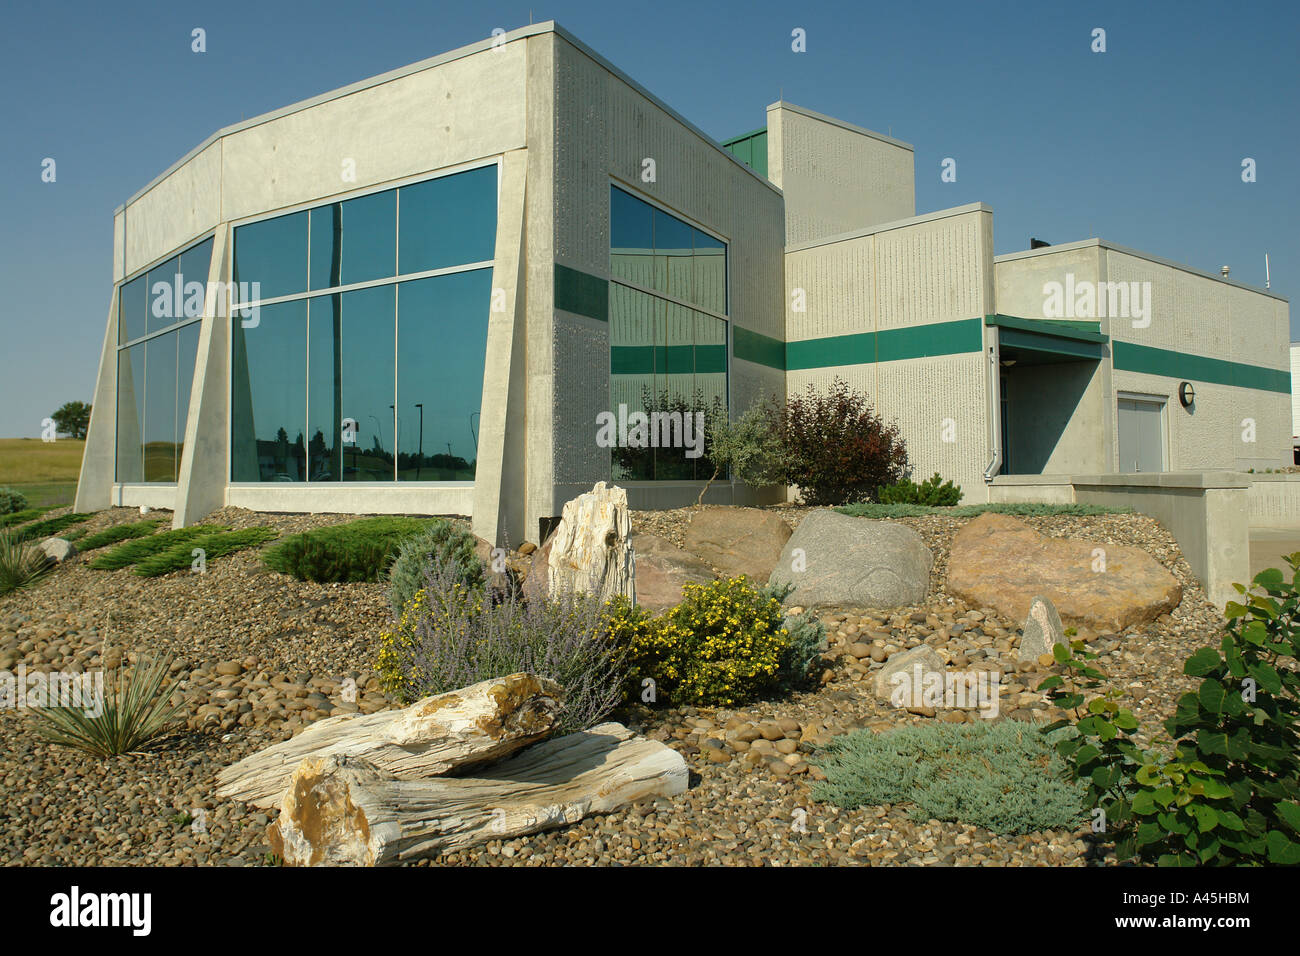 AJD57247, ND, North Dakota, centro di accoglienza, I-94 Foto Stock